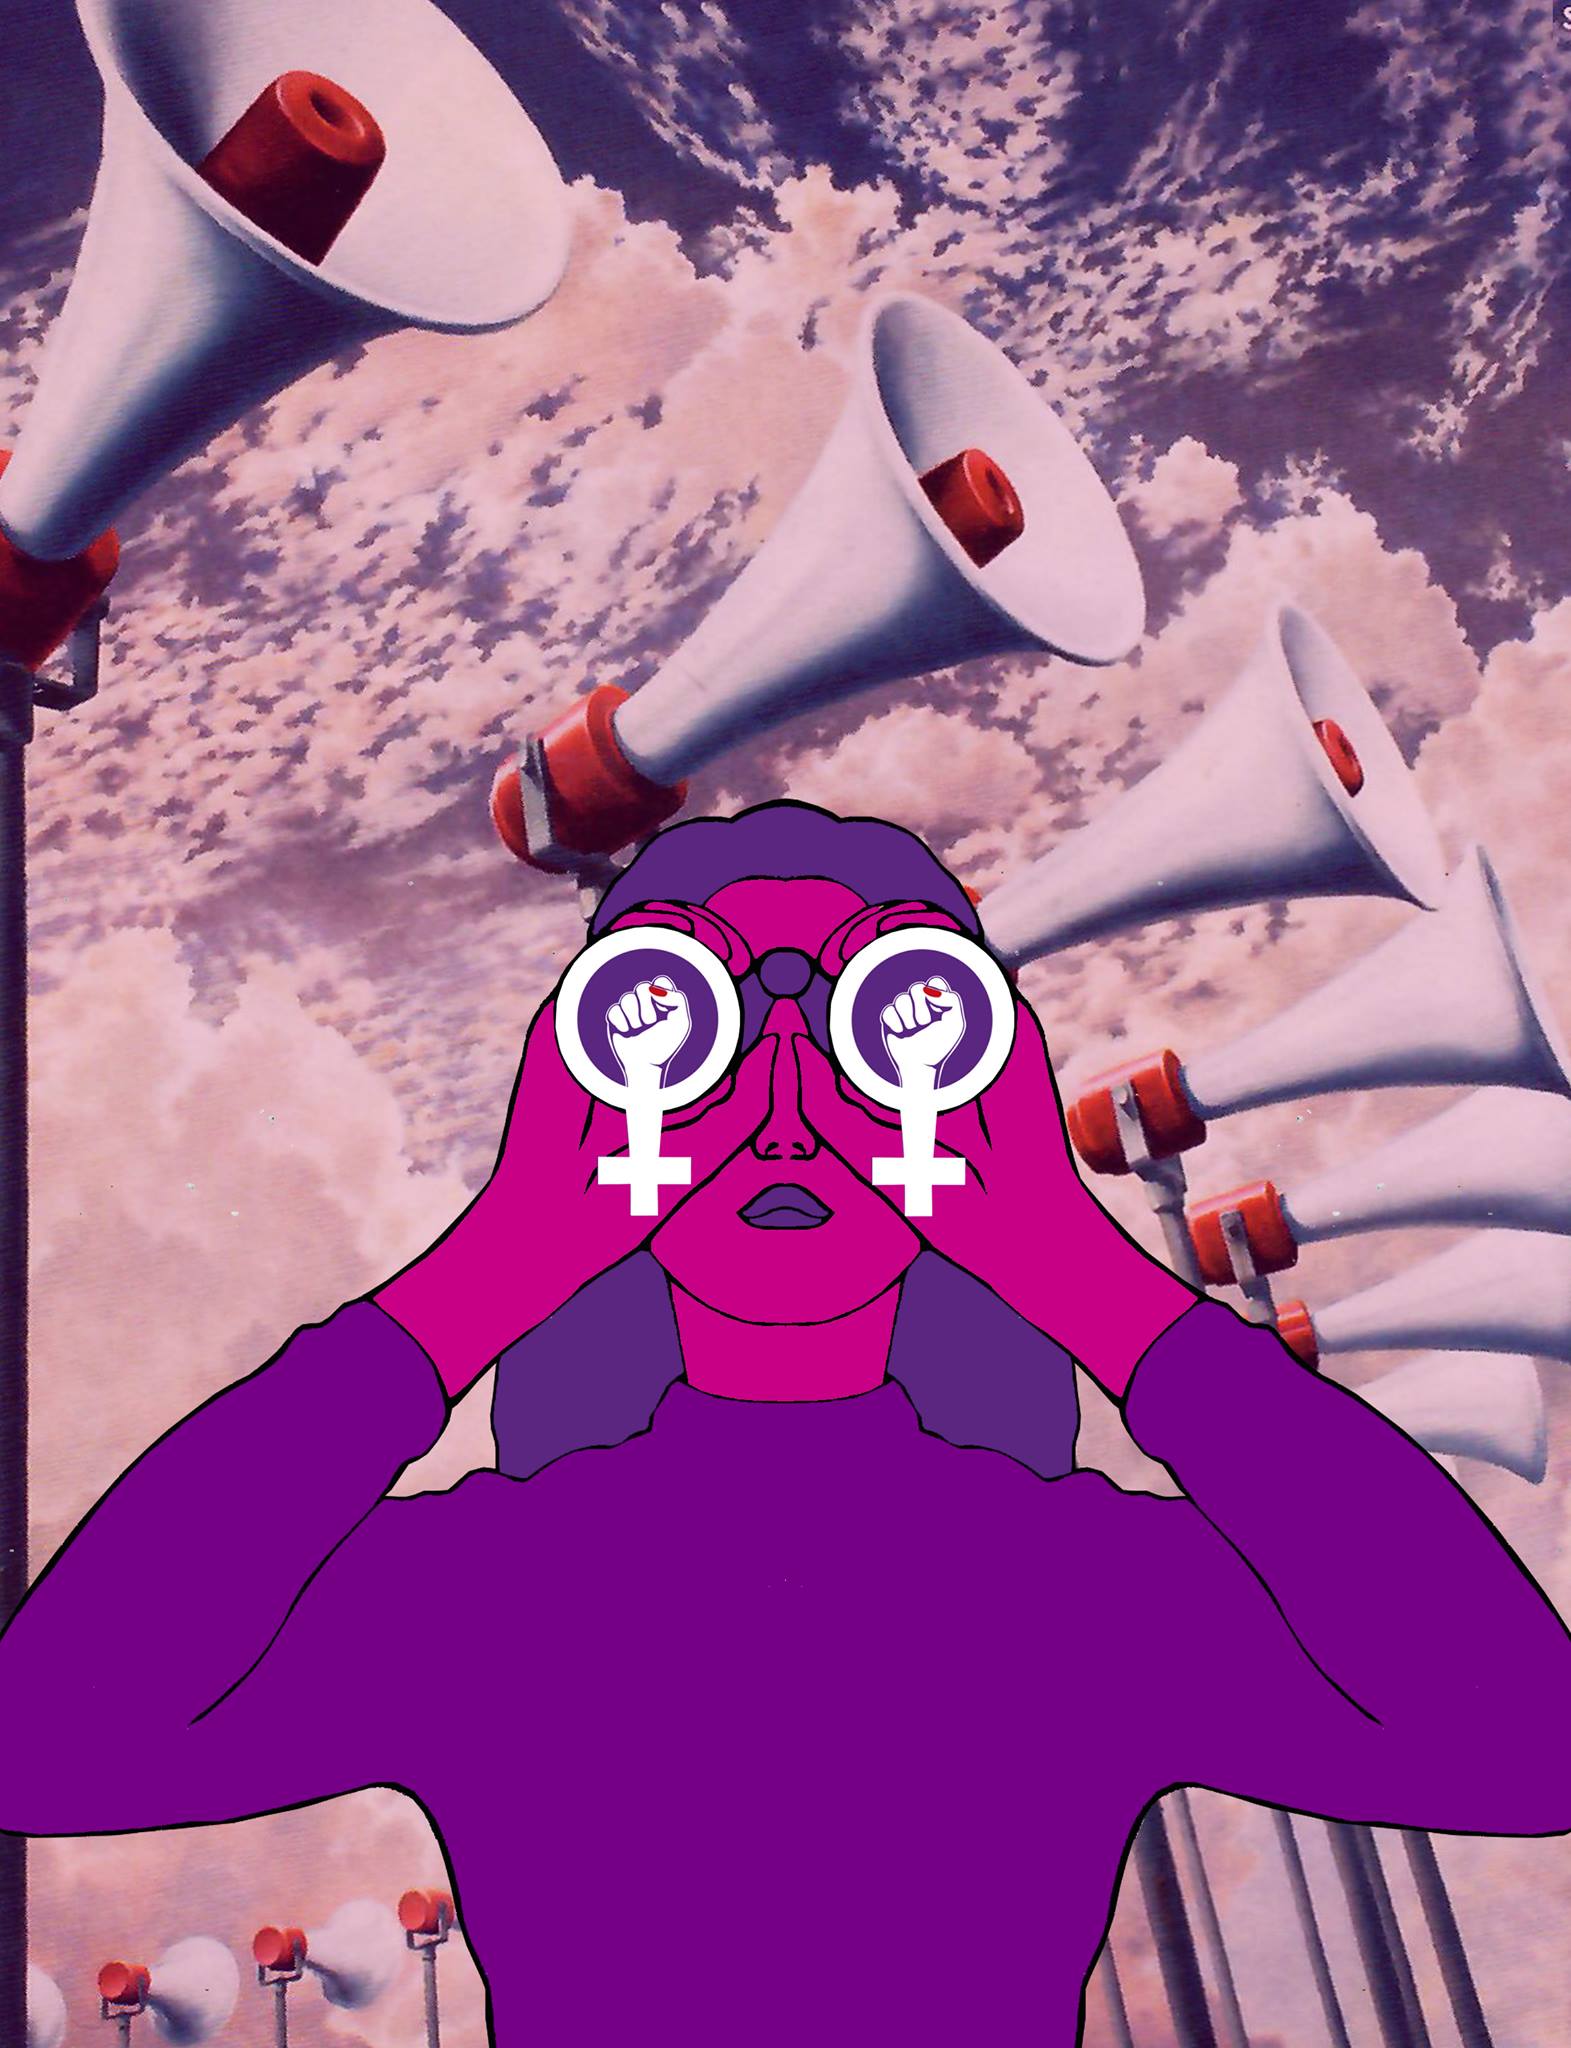 Das Bild des Flyers des Frauen*streikkollektiv Zürichs. Eine pinke Frau in violettem Rollkragenpullover und mit violetten Haaren schaut durch einen feministischen Feldstecher nach vorne.  Im Hintergrund hat es rosa Wolken und viele aufgesteltte hohe Lautsprecher